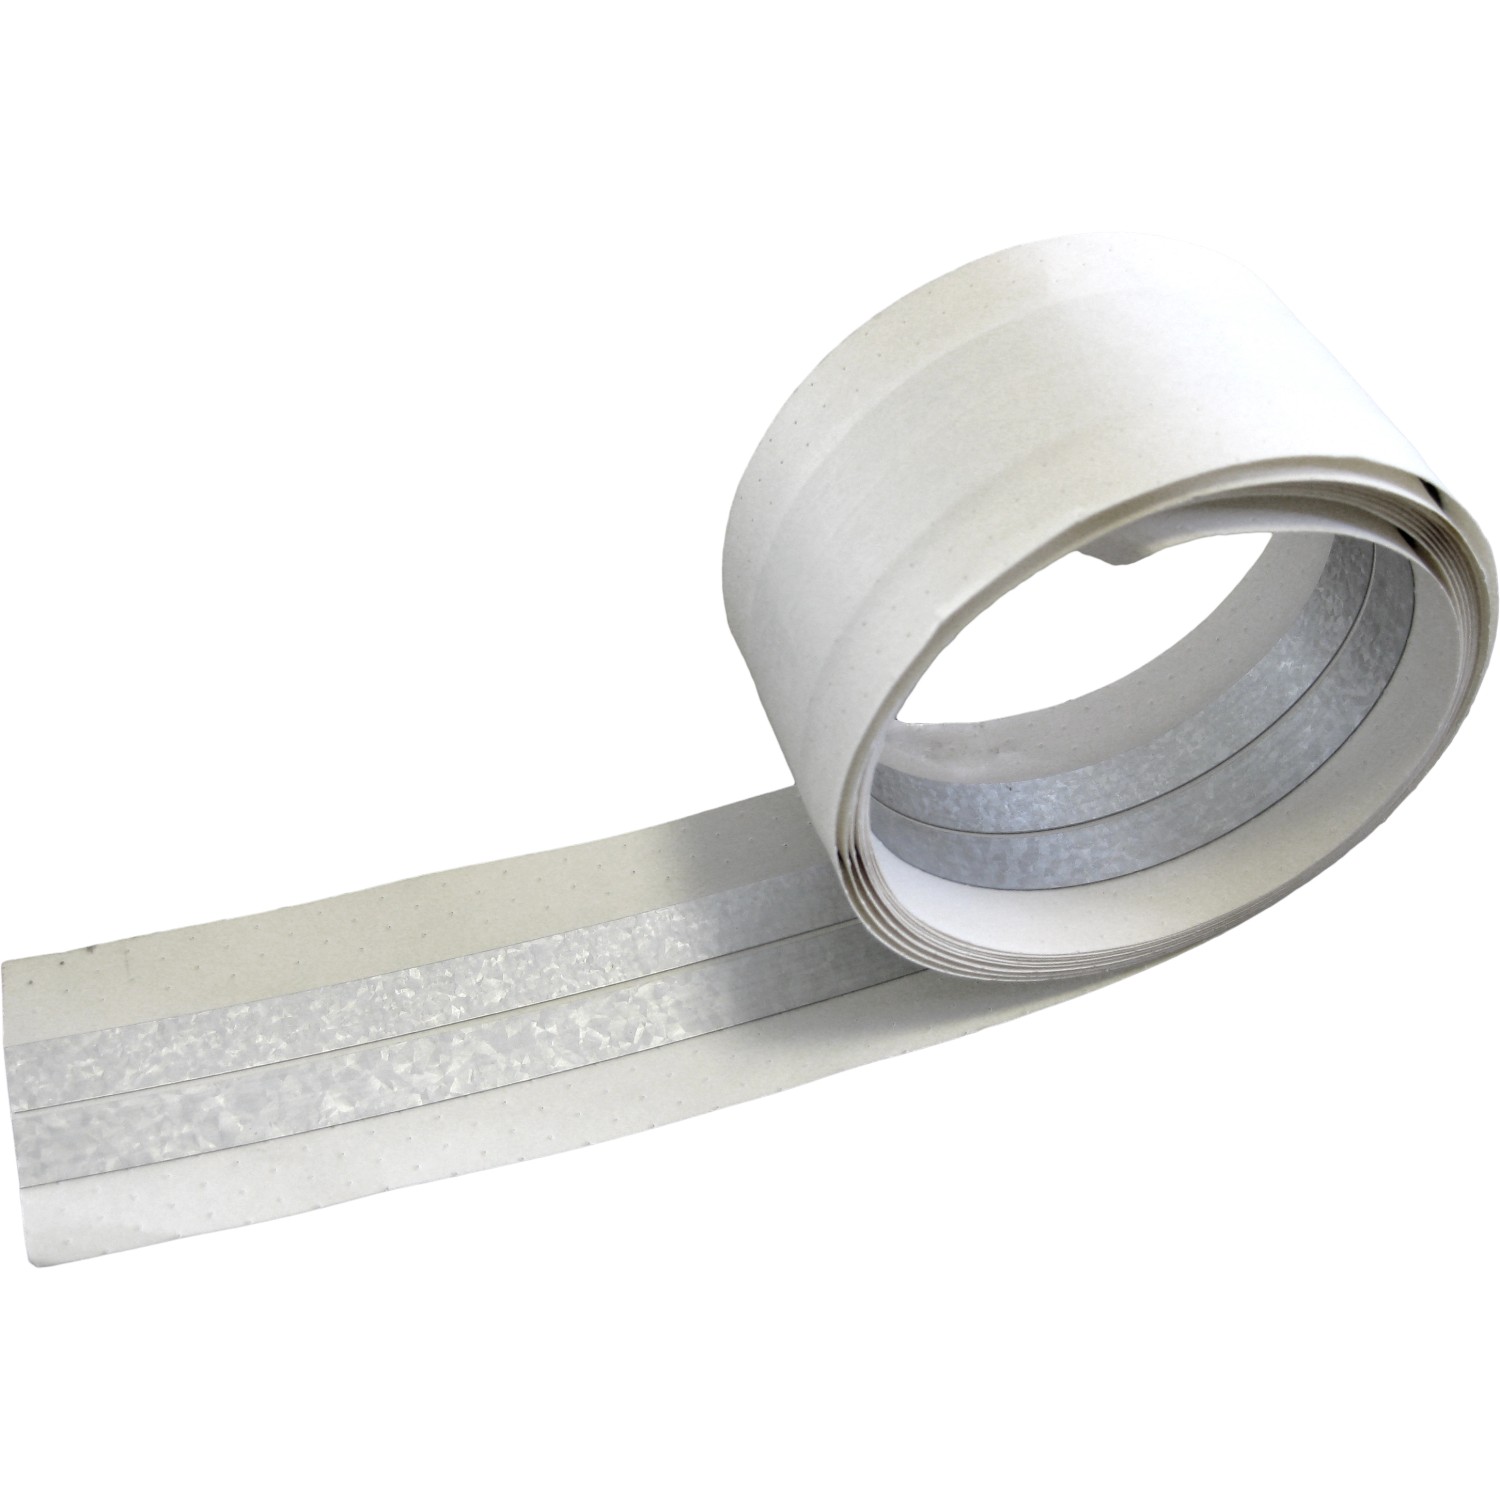 Kantenschutzprofile Aluminium eloxiert Shop / Kantenschutzprofil für  Spanplatten, Möbel, Büromöbel